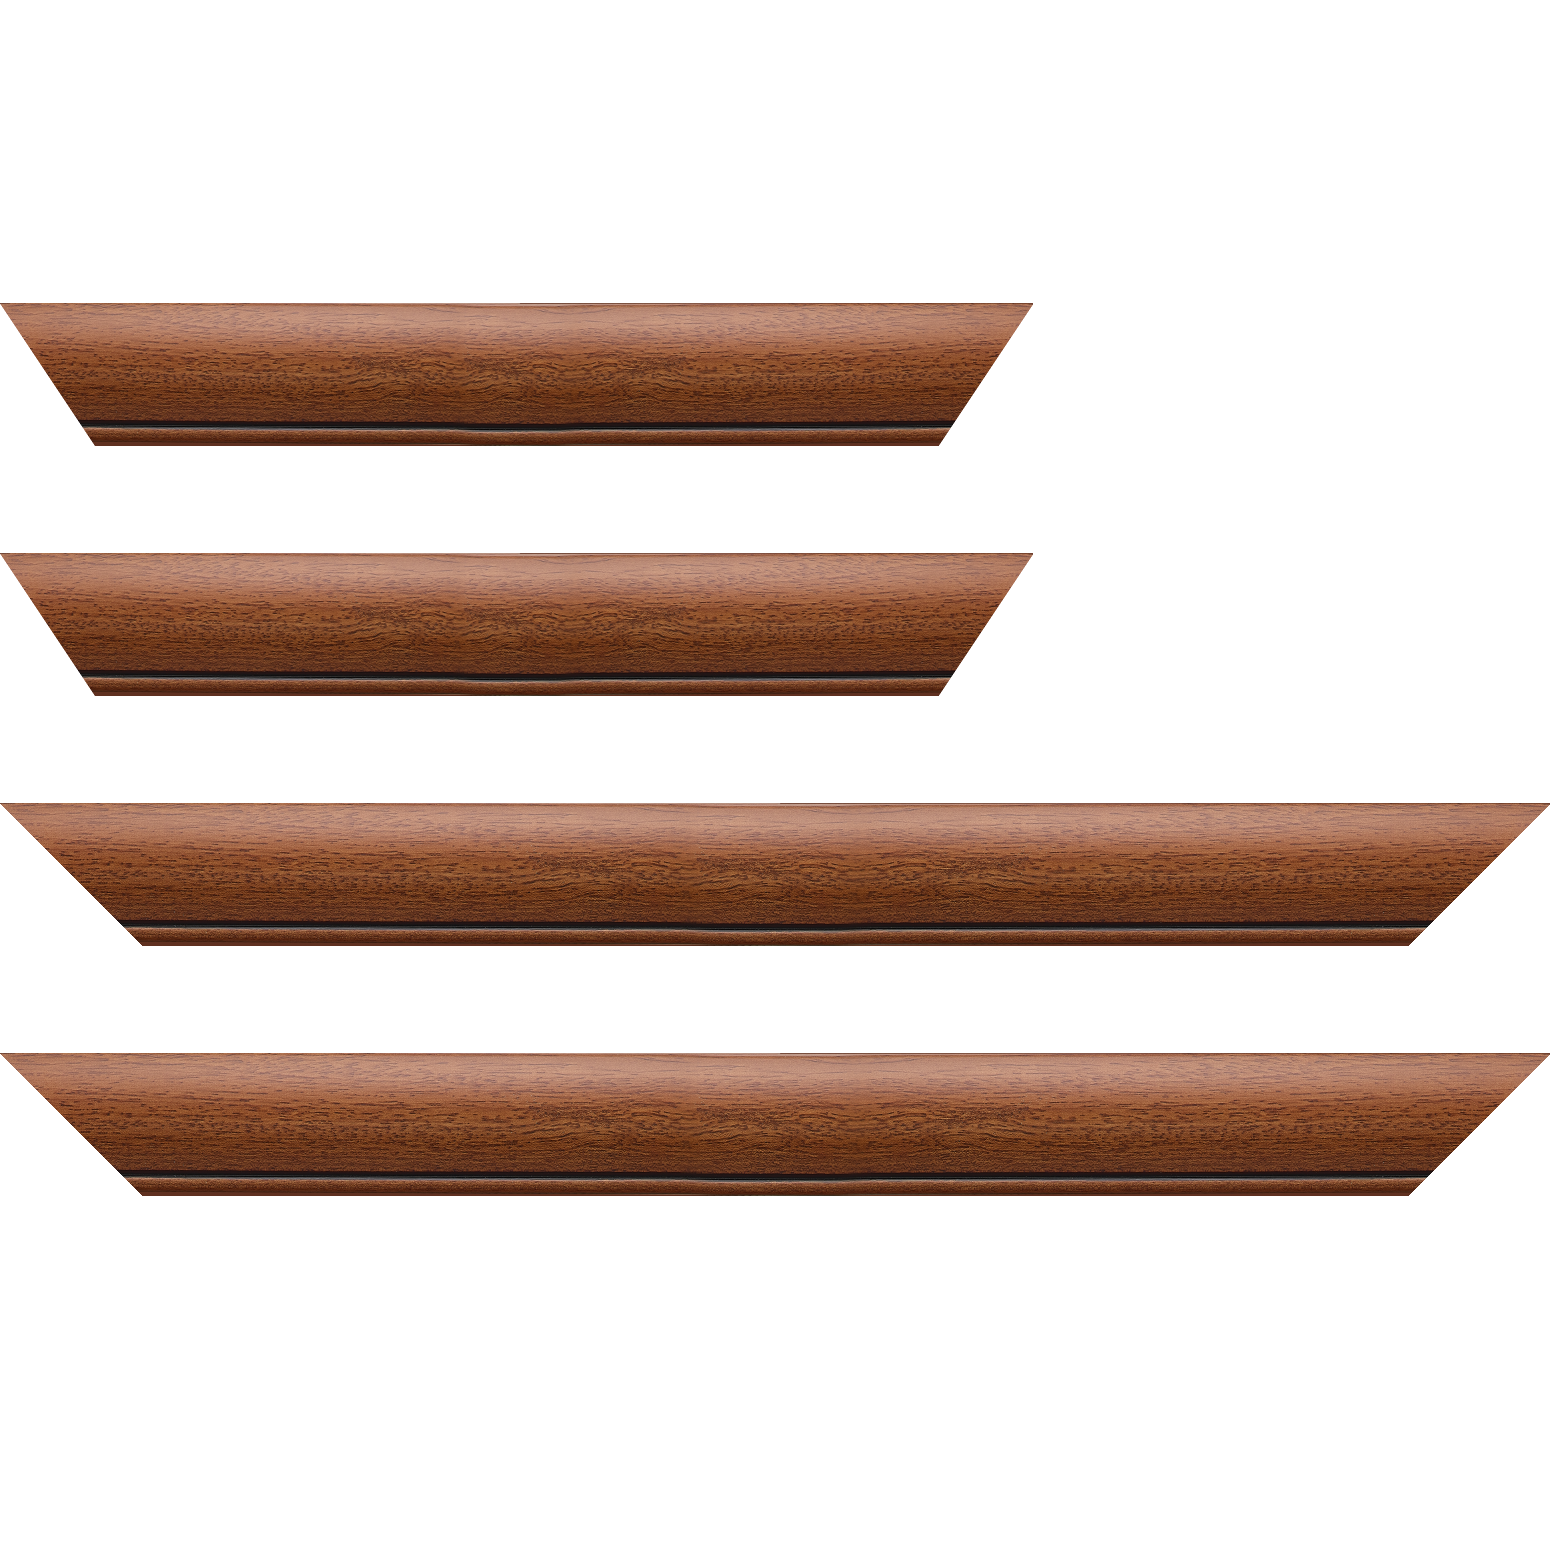 Baguette bois profil arrondi largeur 4.7cm couleur marron ton bois satiné rehaussé d'un filet noir - 84.1x118.9